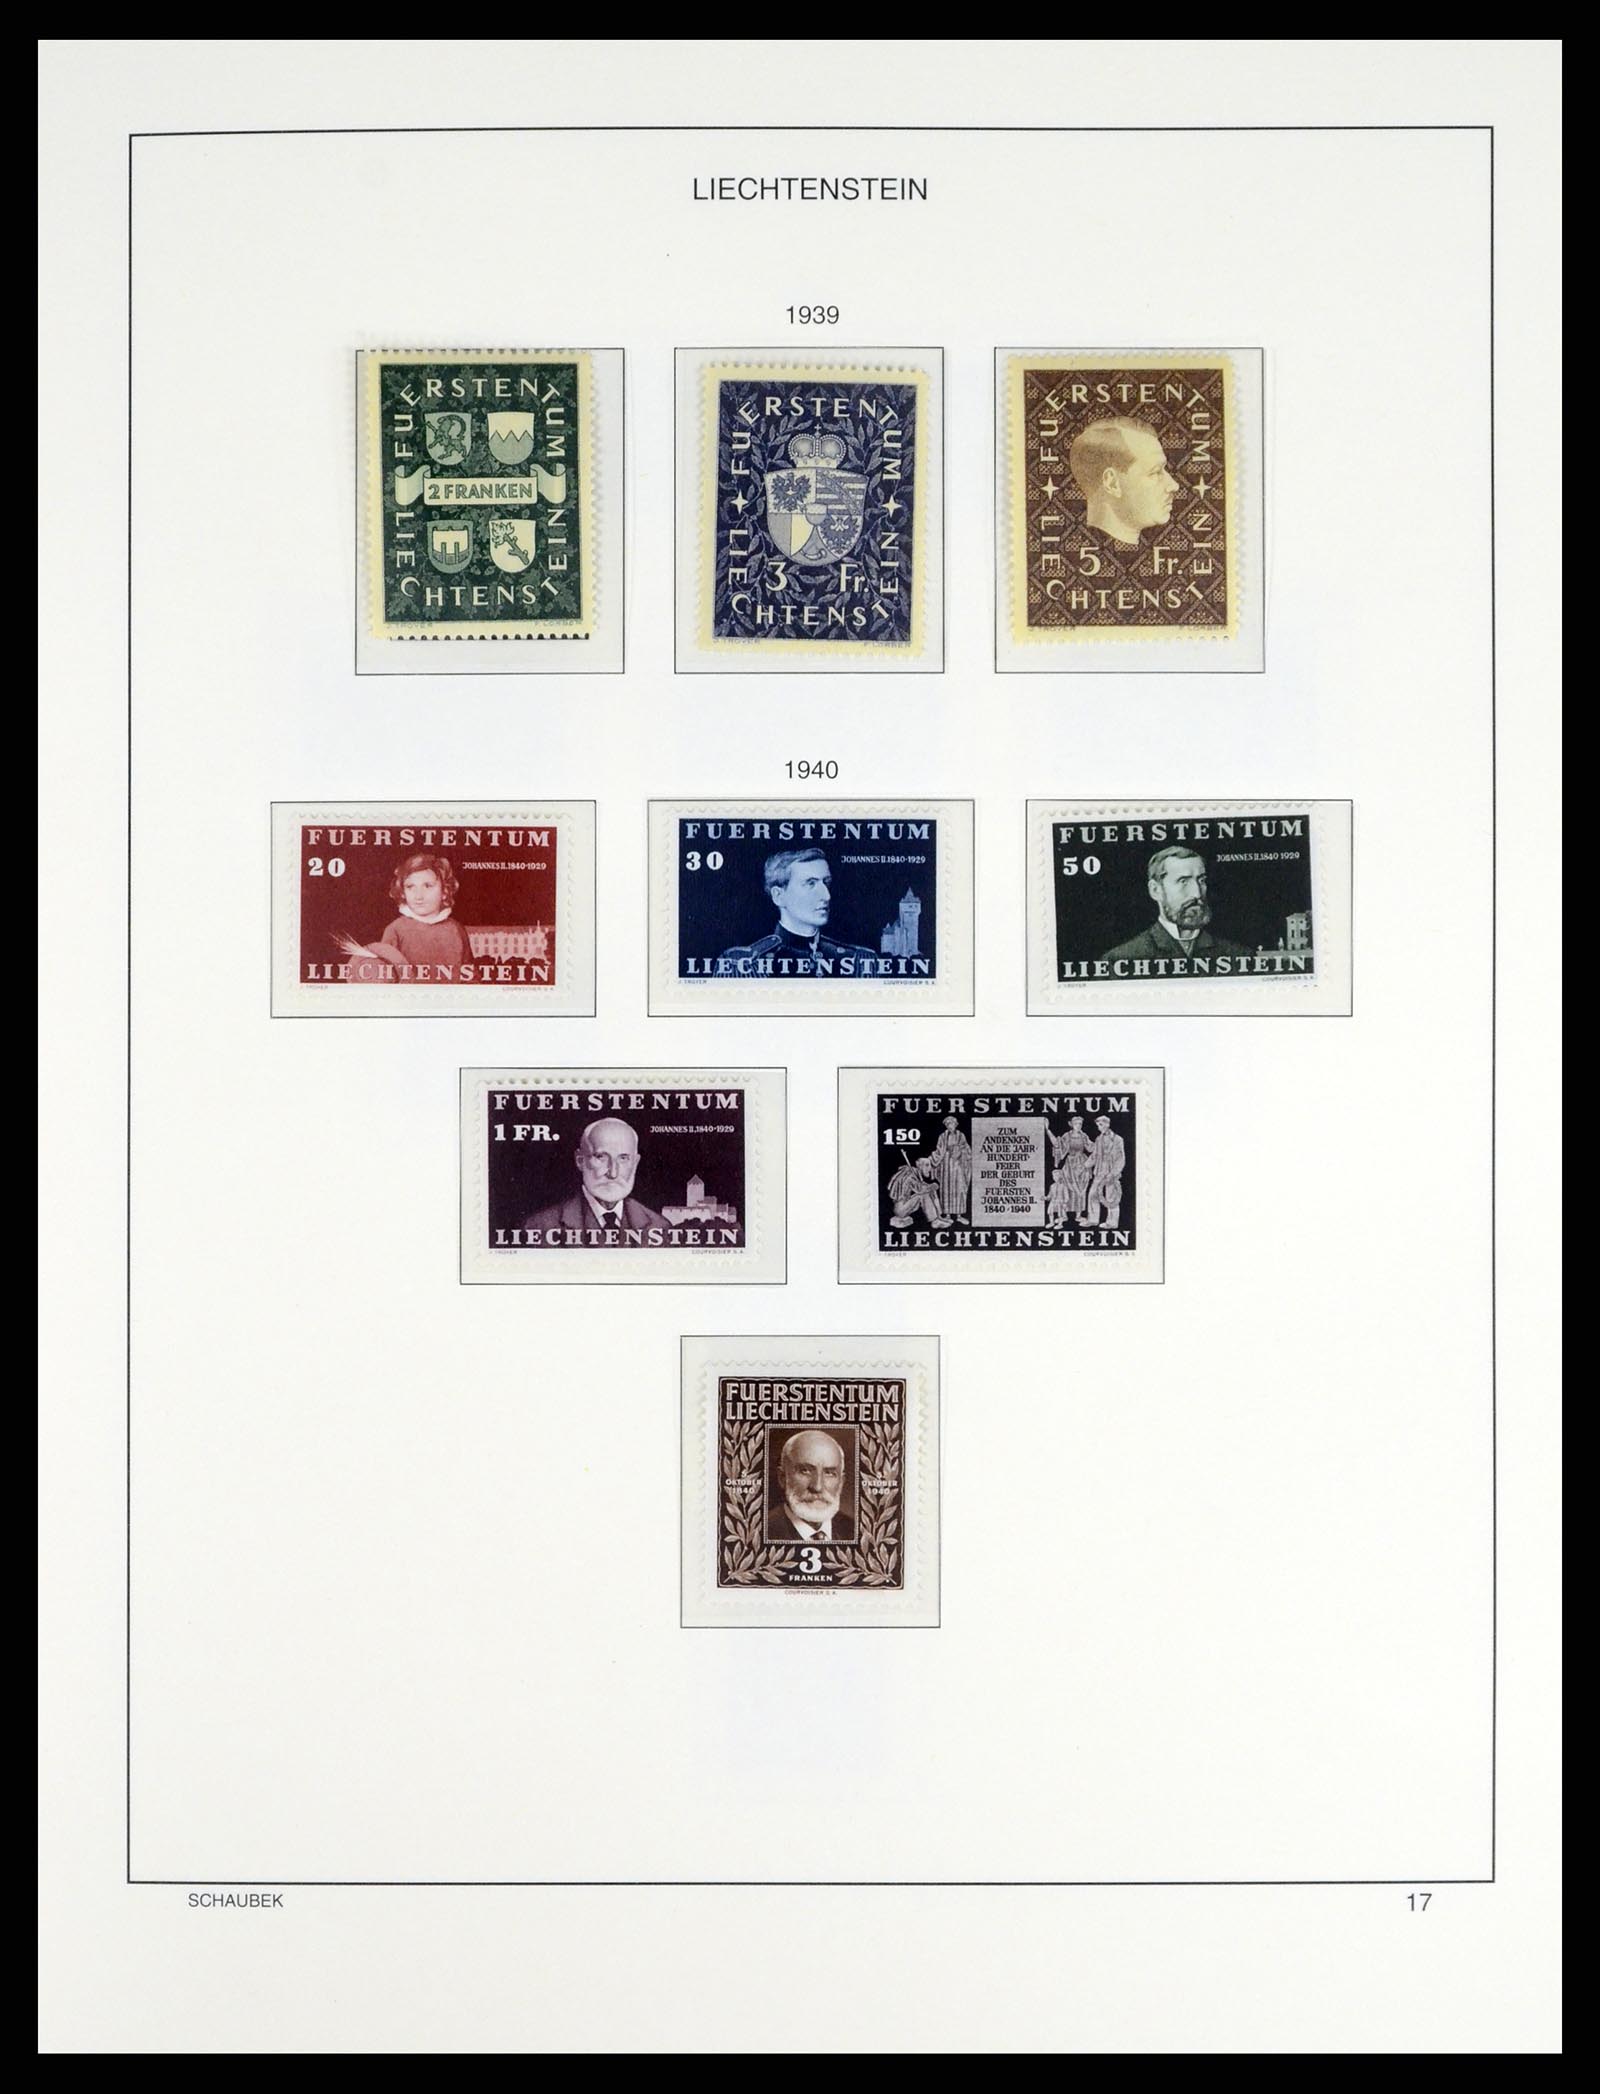 37547 020 - Postzegelverzameling 37547 Liechtenstein 1912-2011.